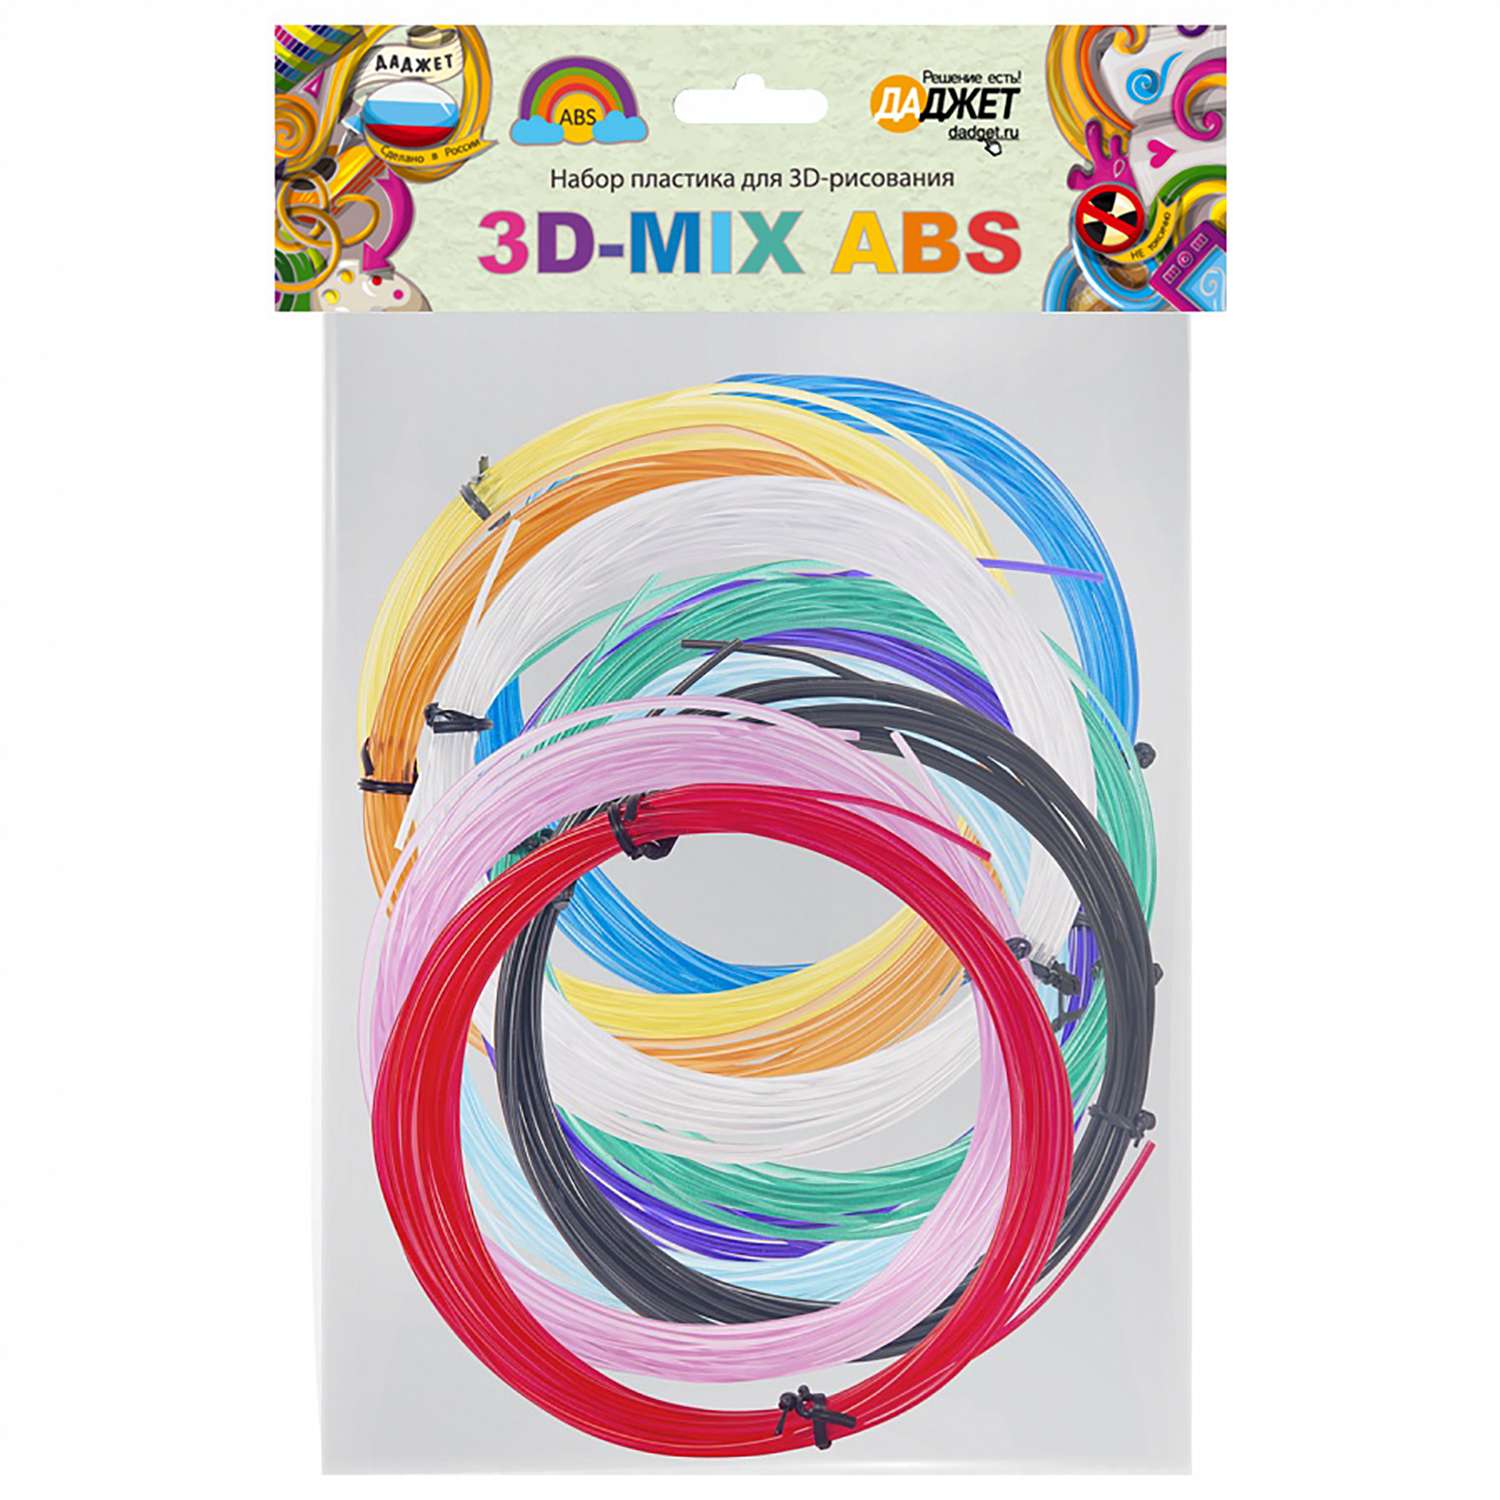 Набор пластика Даджет для 3D-рисования 3D-Mix ABS - фото 1